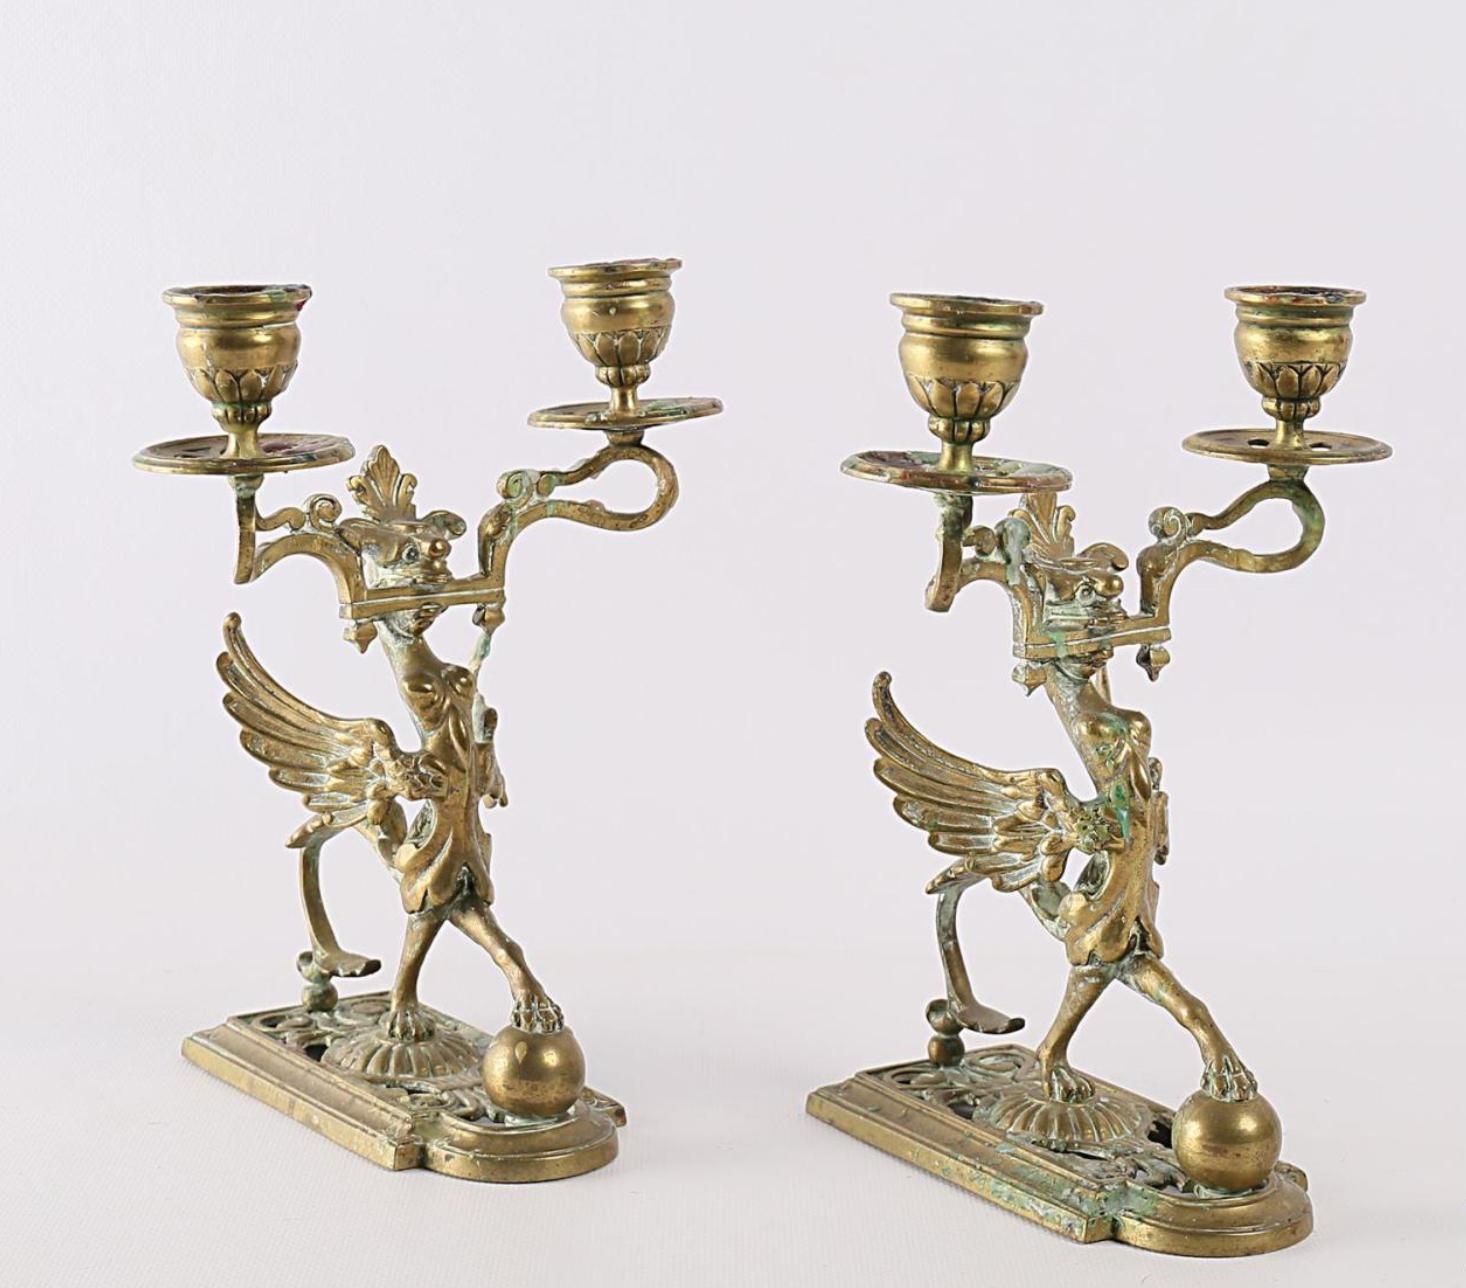 Feines Paar vergoldete Metall-Kerzenhalter mit zwei Armen des Lichts, die eine Chimäre mit langen Flügeln posiert auf einer Kugel.
Frankreich, um 1870.